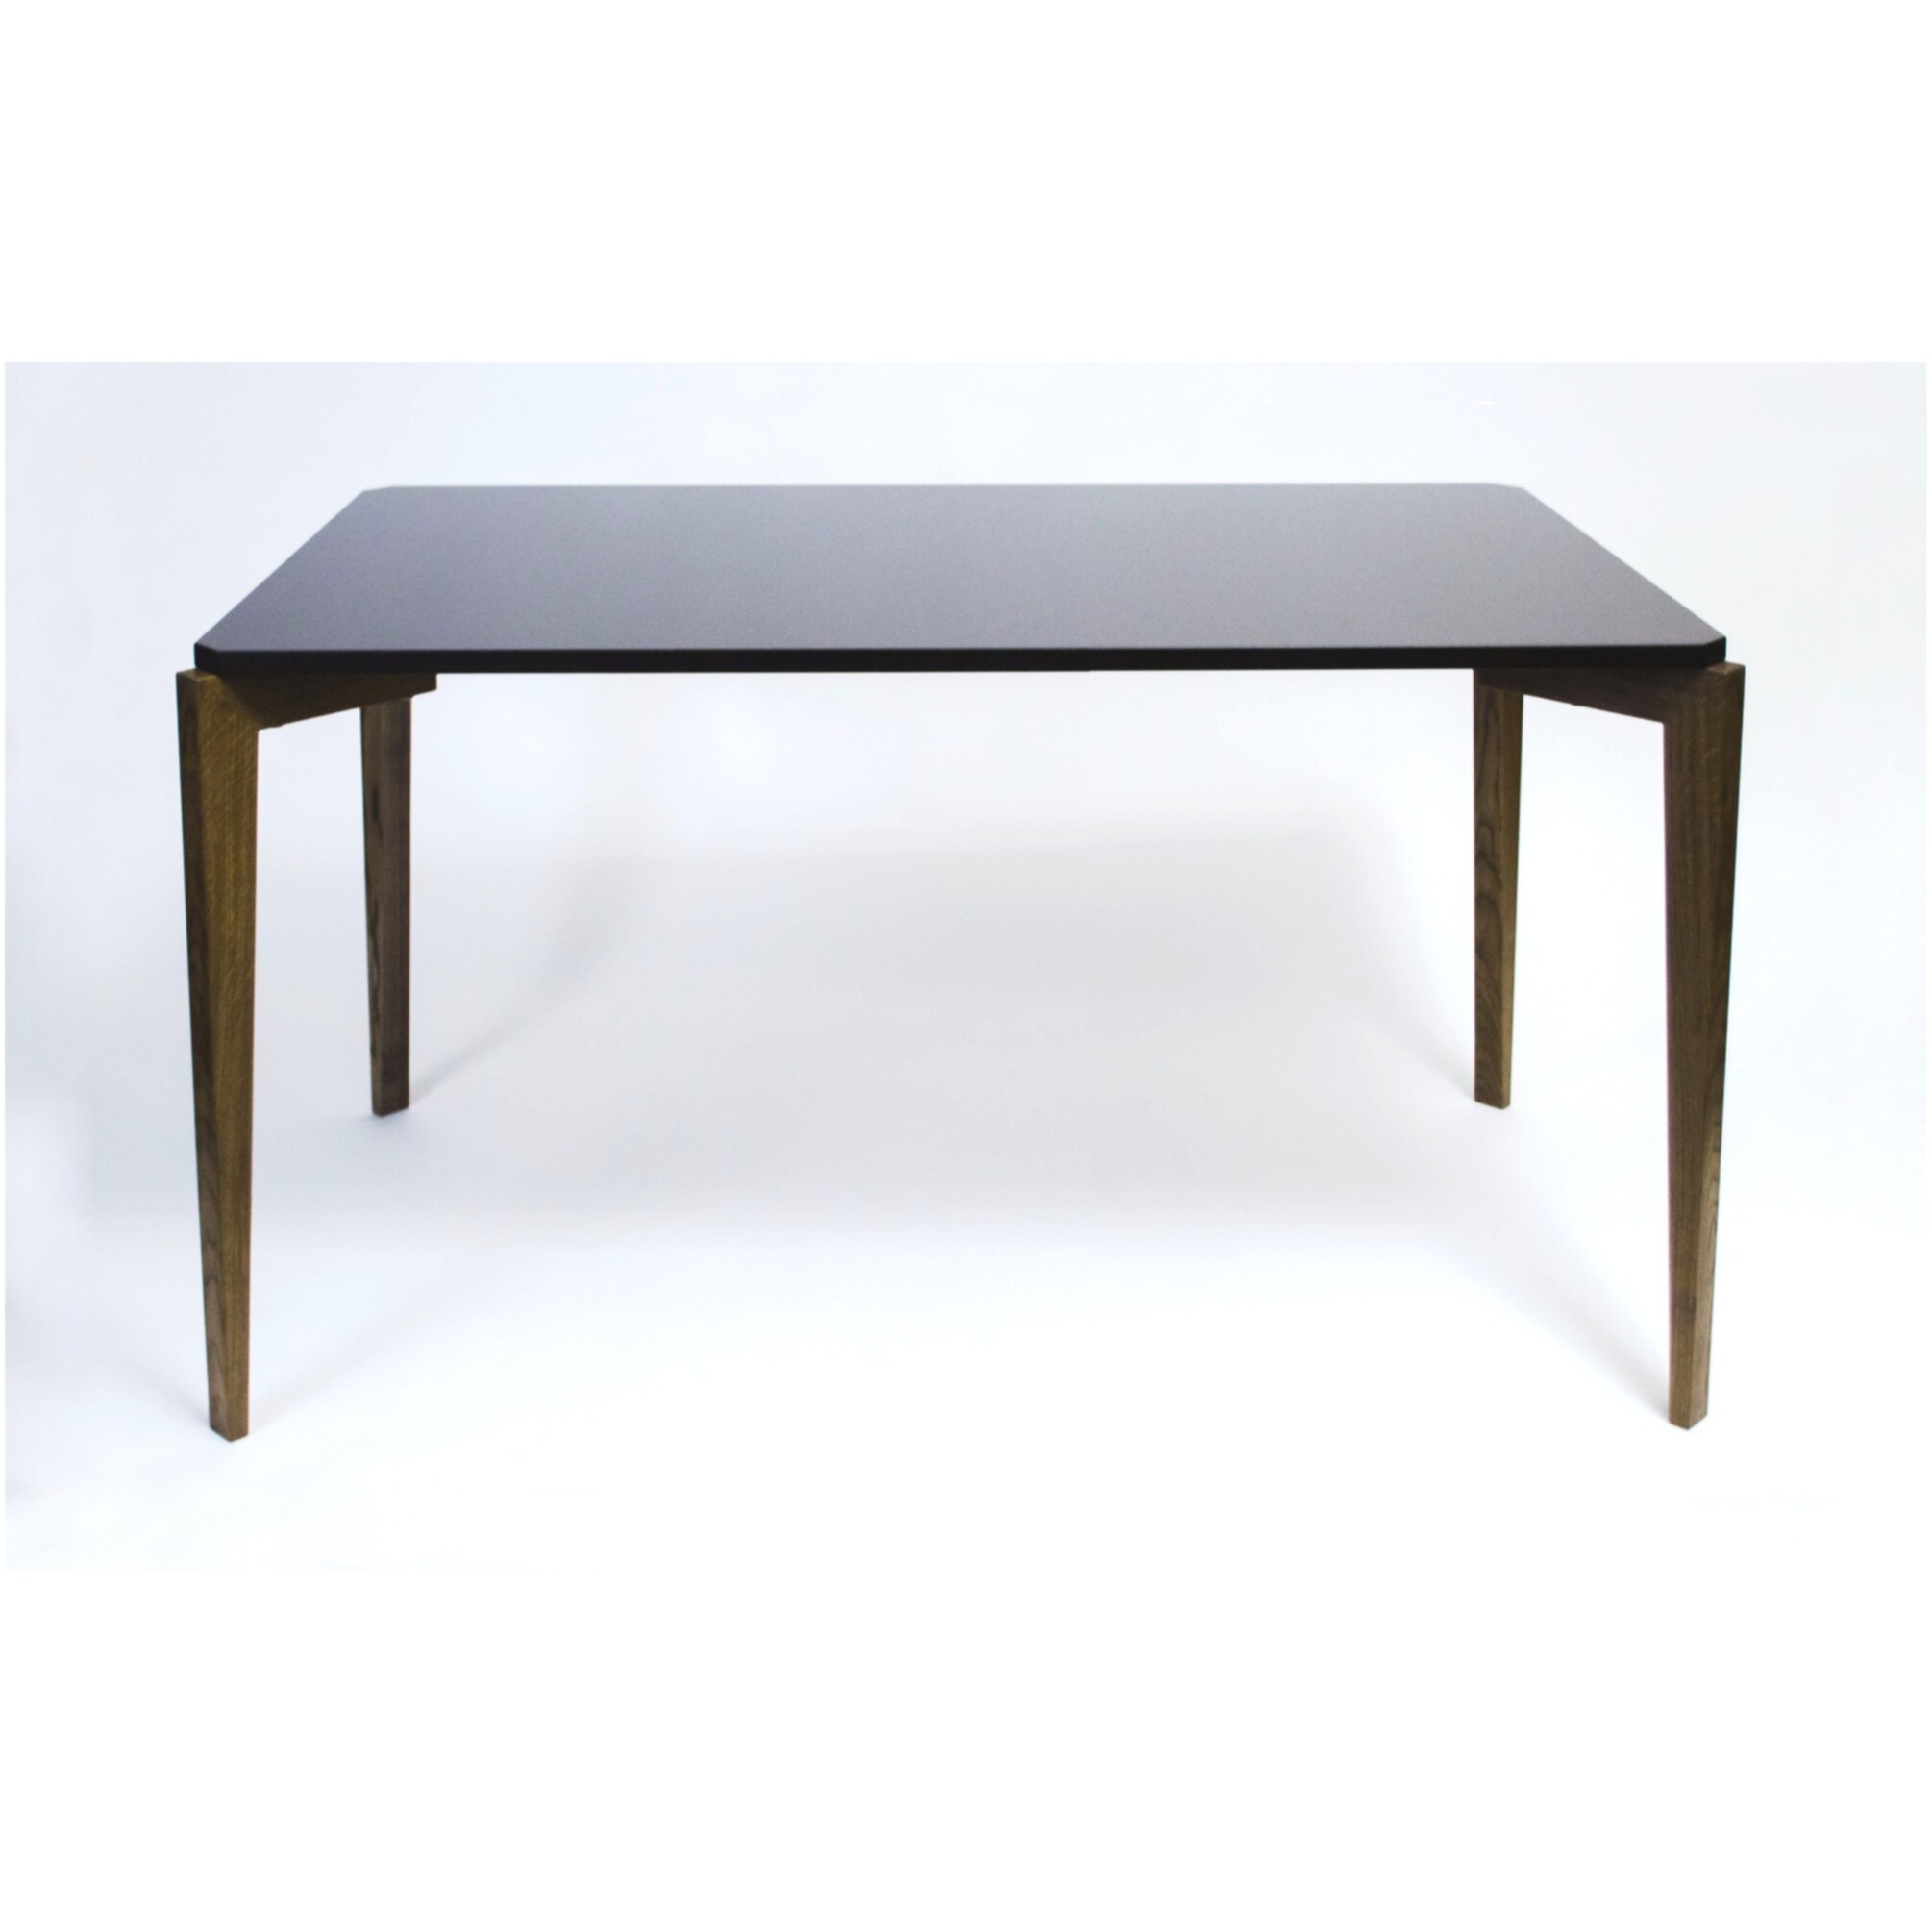 Обеденный стол черный прямоугольный с ножками темный дуб 124 см Rectangle Compact